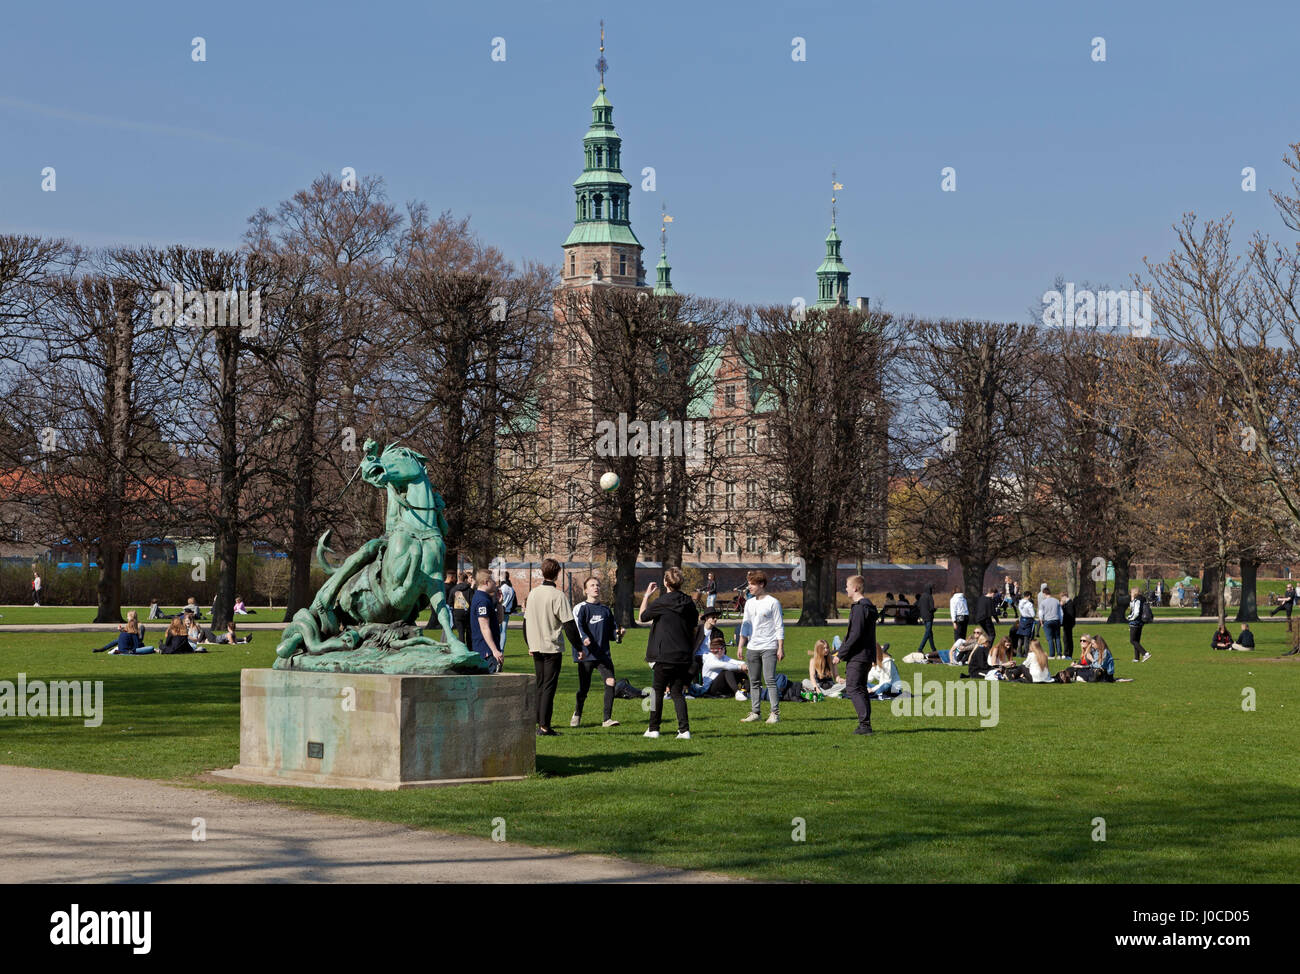 Les jeunes aiment le chaud soleil du printemps le Dimanche des Rameaux de Kongens Have, le jardin du roi, Copenhague, Danemark. Le château de Rosenborg en arrière-plan. Banque D'Images